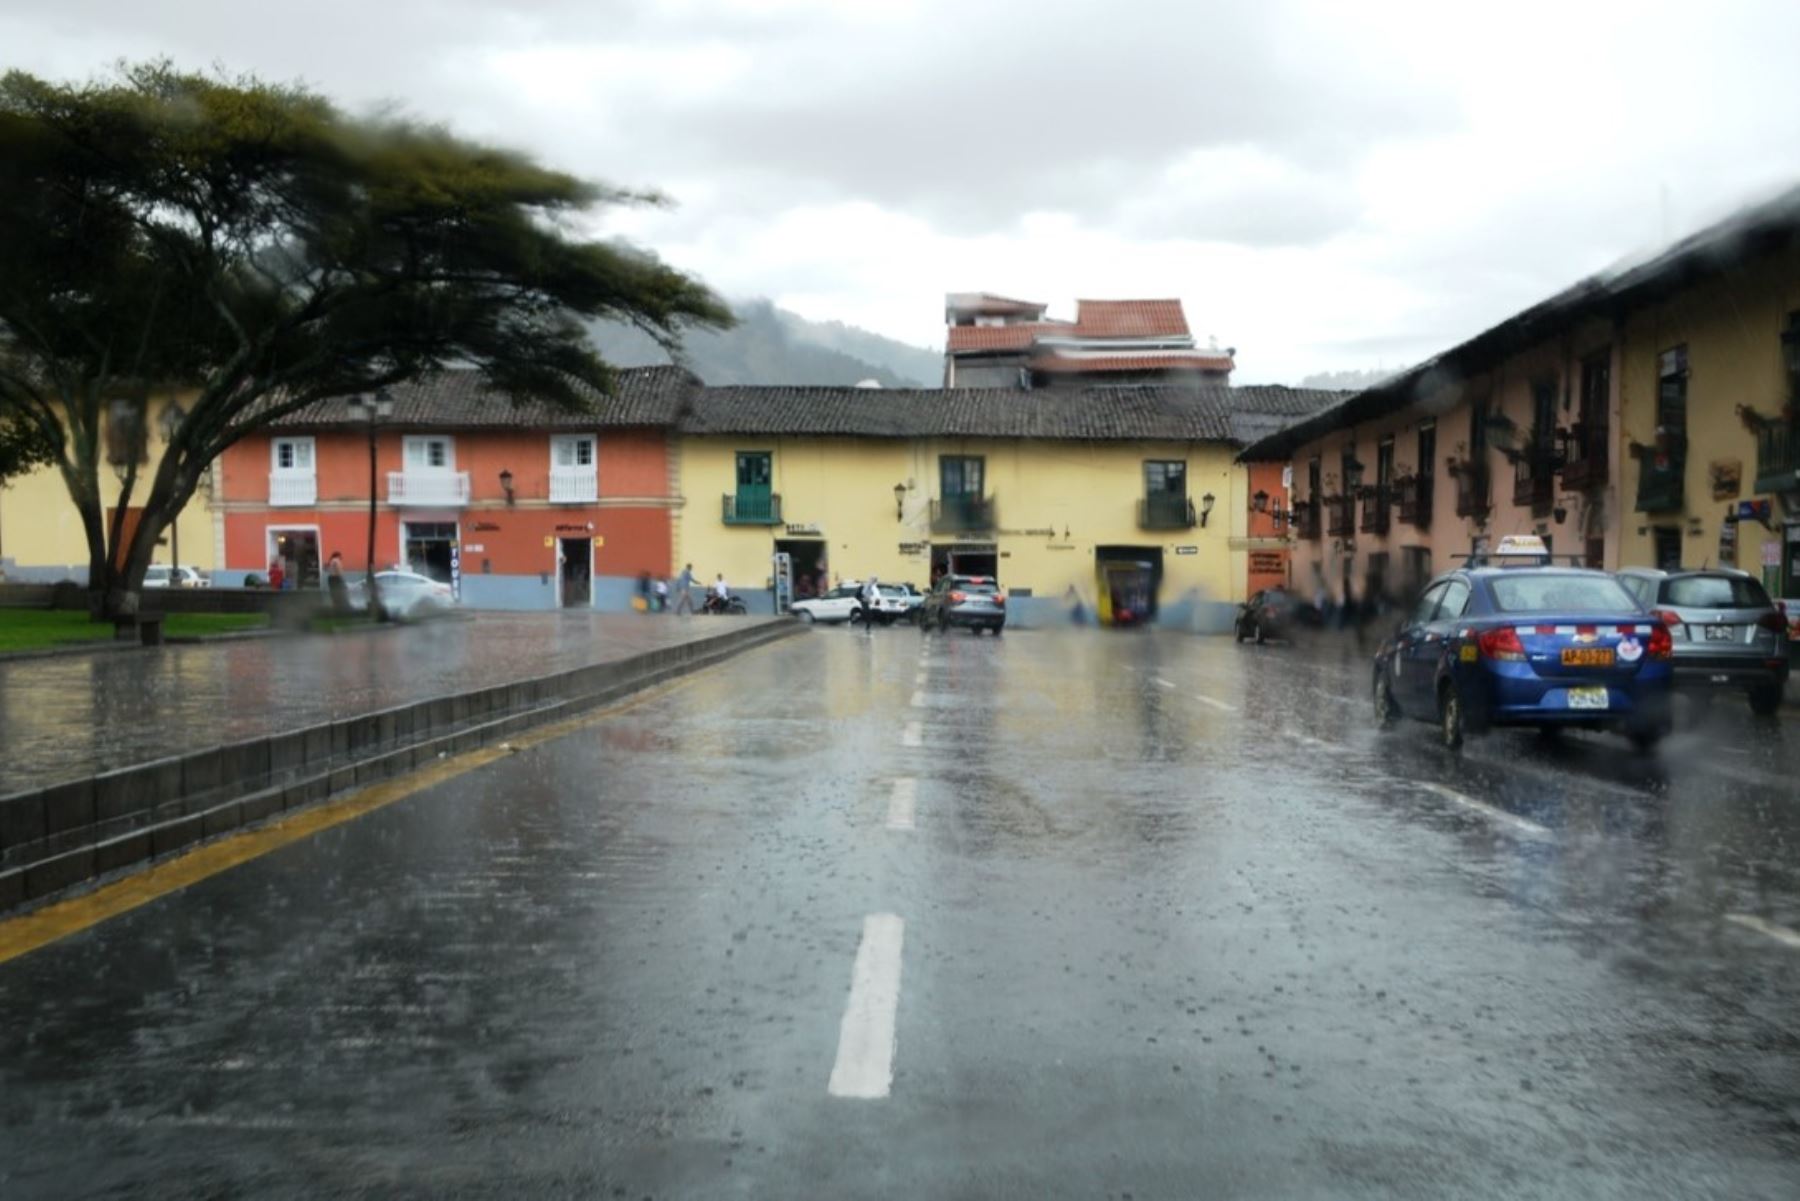 Según el reporte del Senamhi, la mayor acumulación de lluvia se registró en la víspera en la estación meteorológica de Quilcate, con 21.4 mm/d. Foto: ANDINA/Cortesía Eduard Lozano